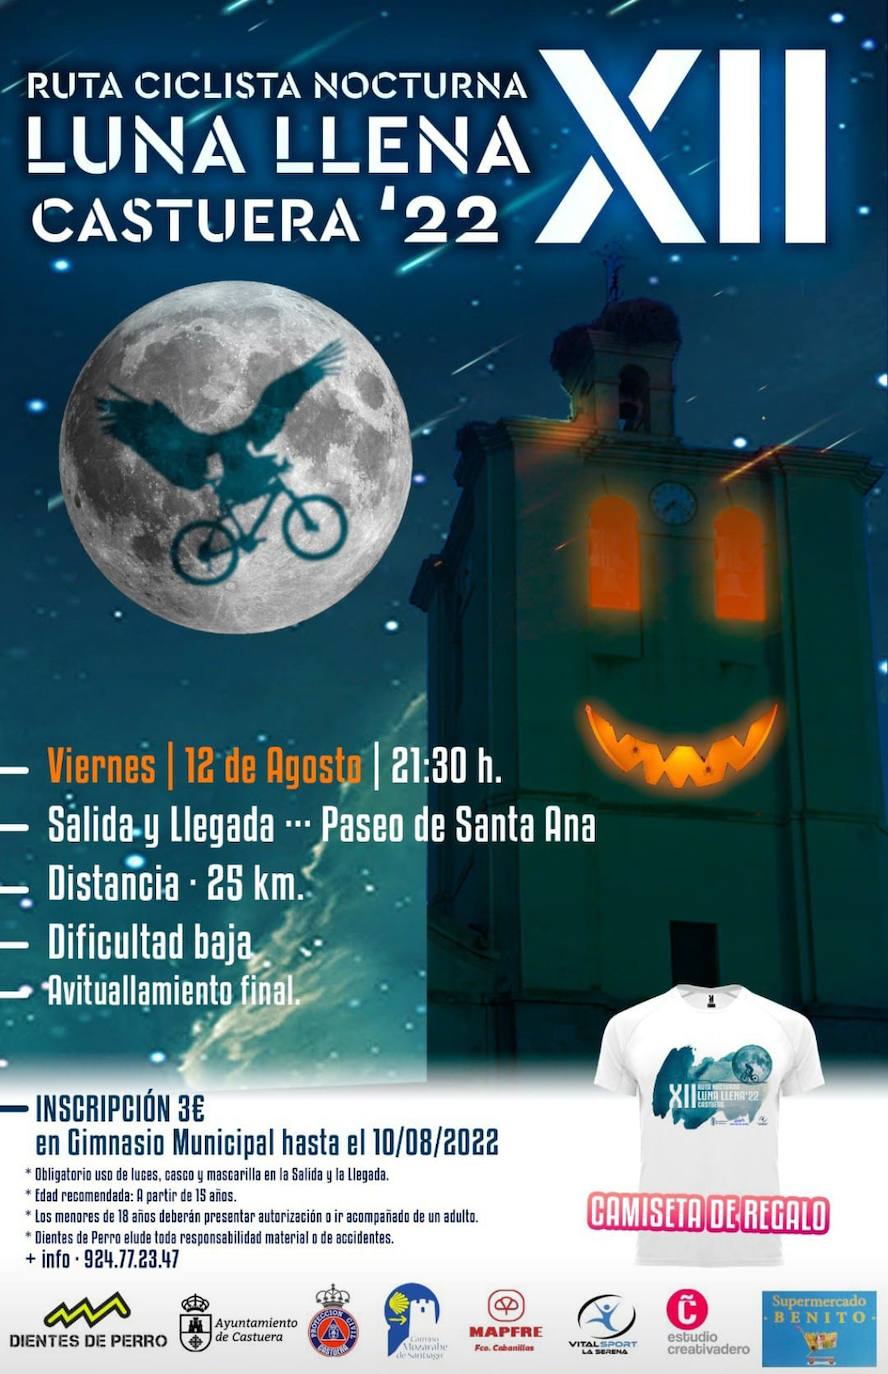 la ruta nocturna ciclista 'Luna Llena' se celebrará el viernes 12 de agosto